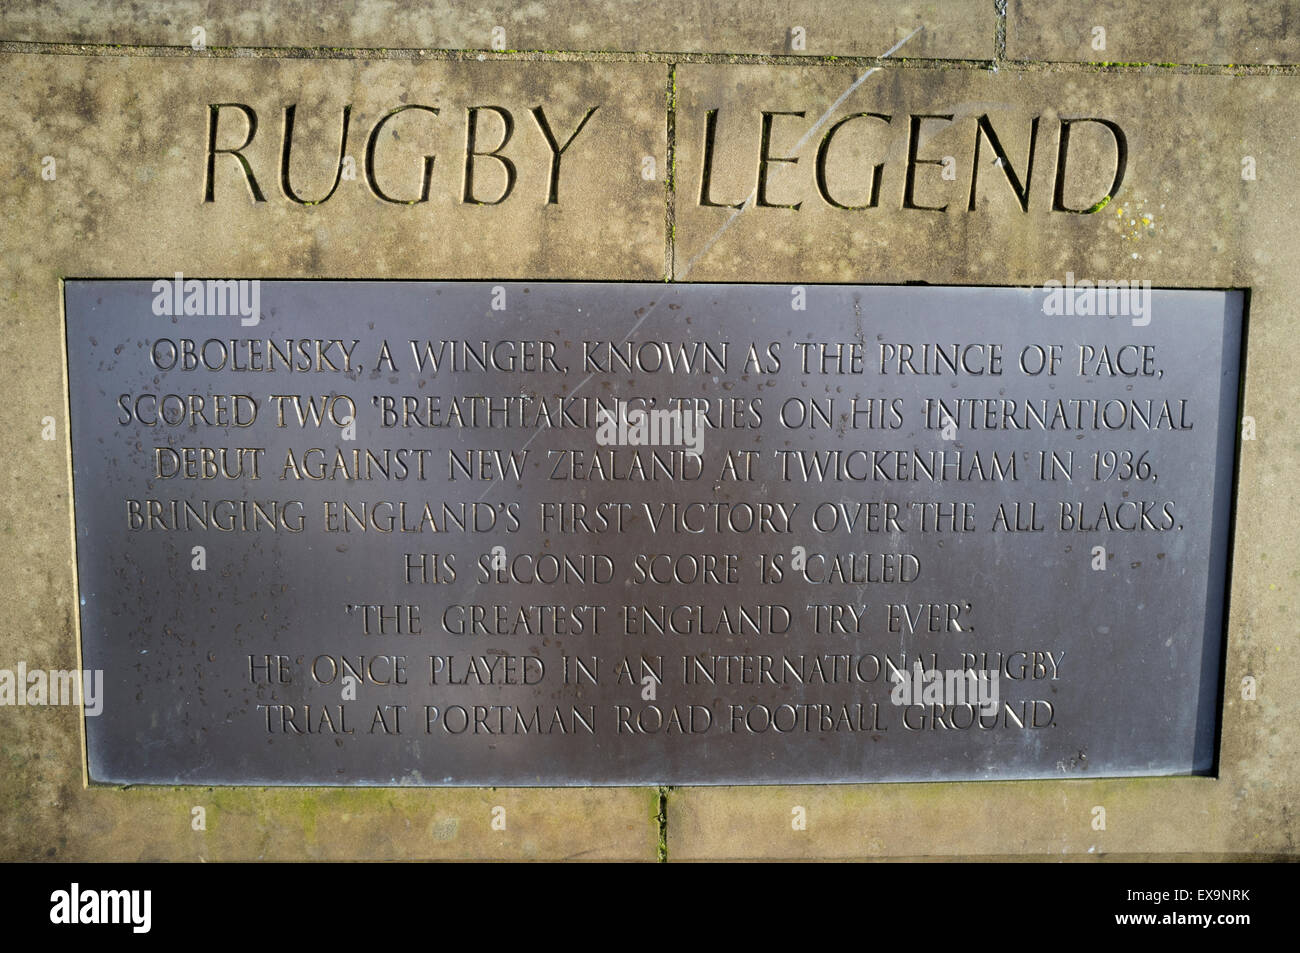 Un monument à rugby legend Obolensky, connu comme le prix de l'APCE, Ipswich, Suffolk, UK. Banque D'Images